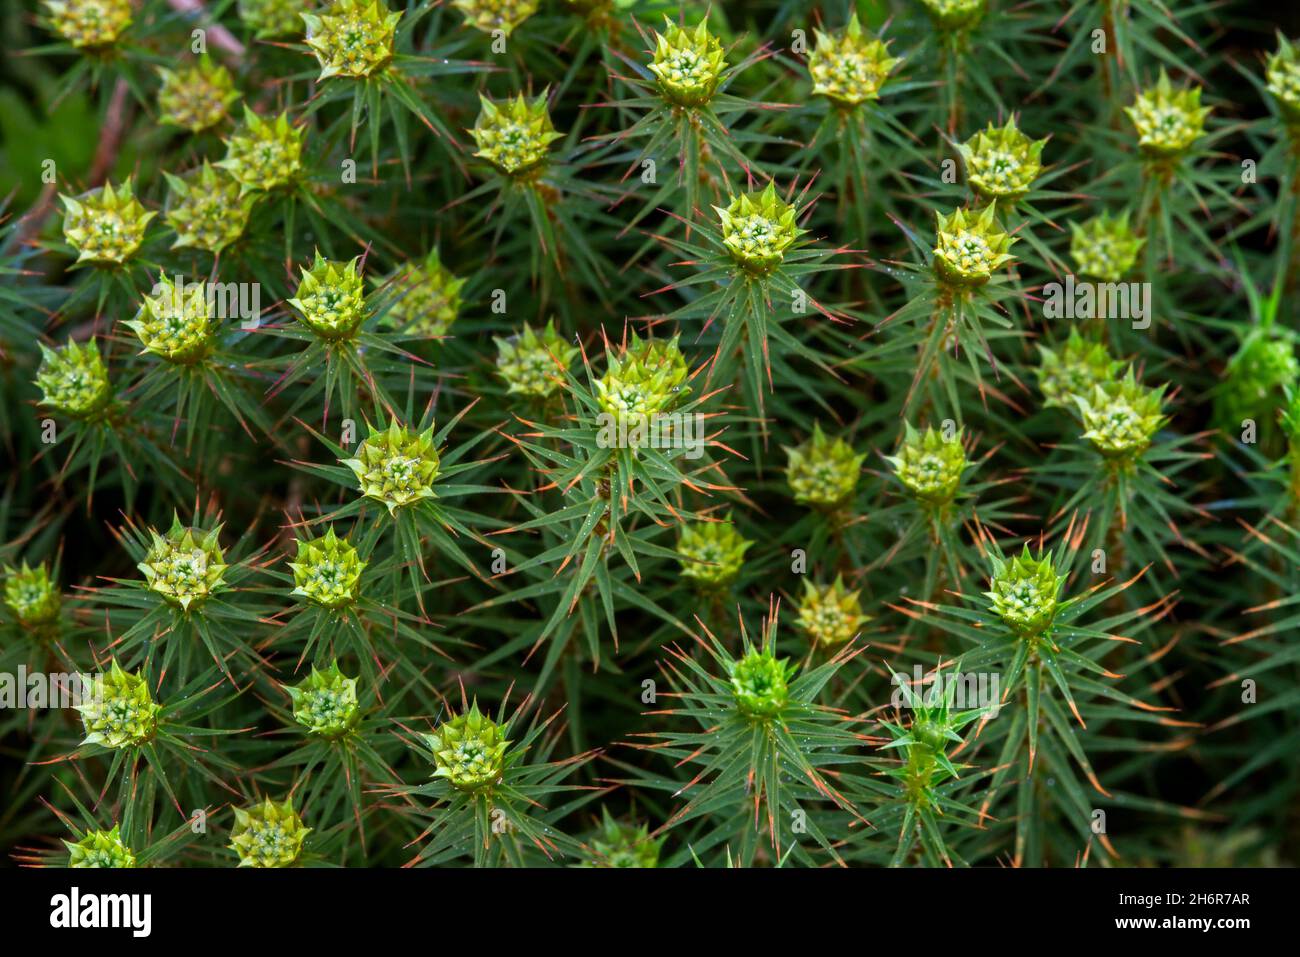 Juniper haircap / juniper polytrichum moss (Polytrichum juniperinum / Polytrichum alpestre) close-up showing male gametophytes Stock Photo